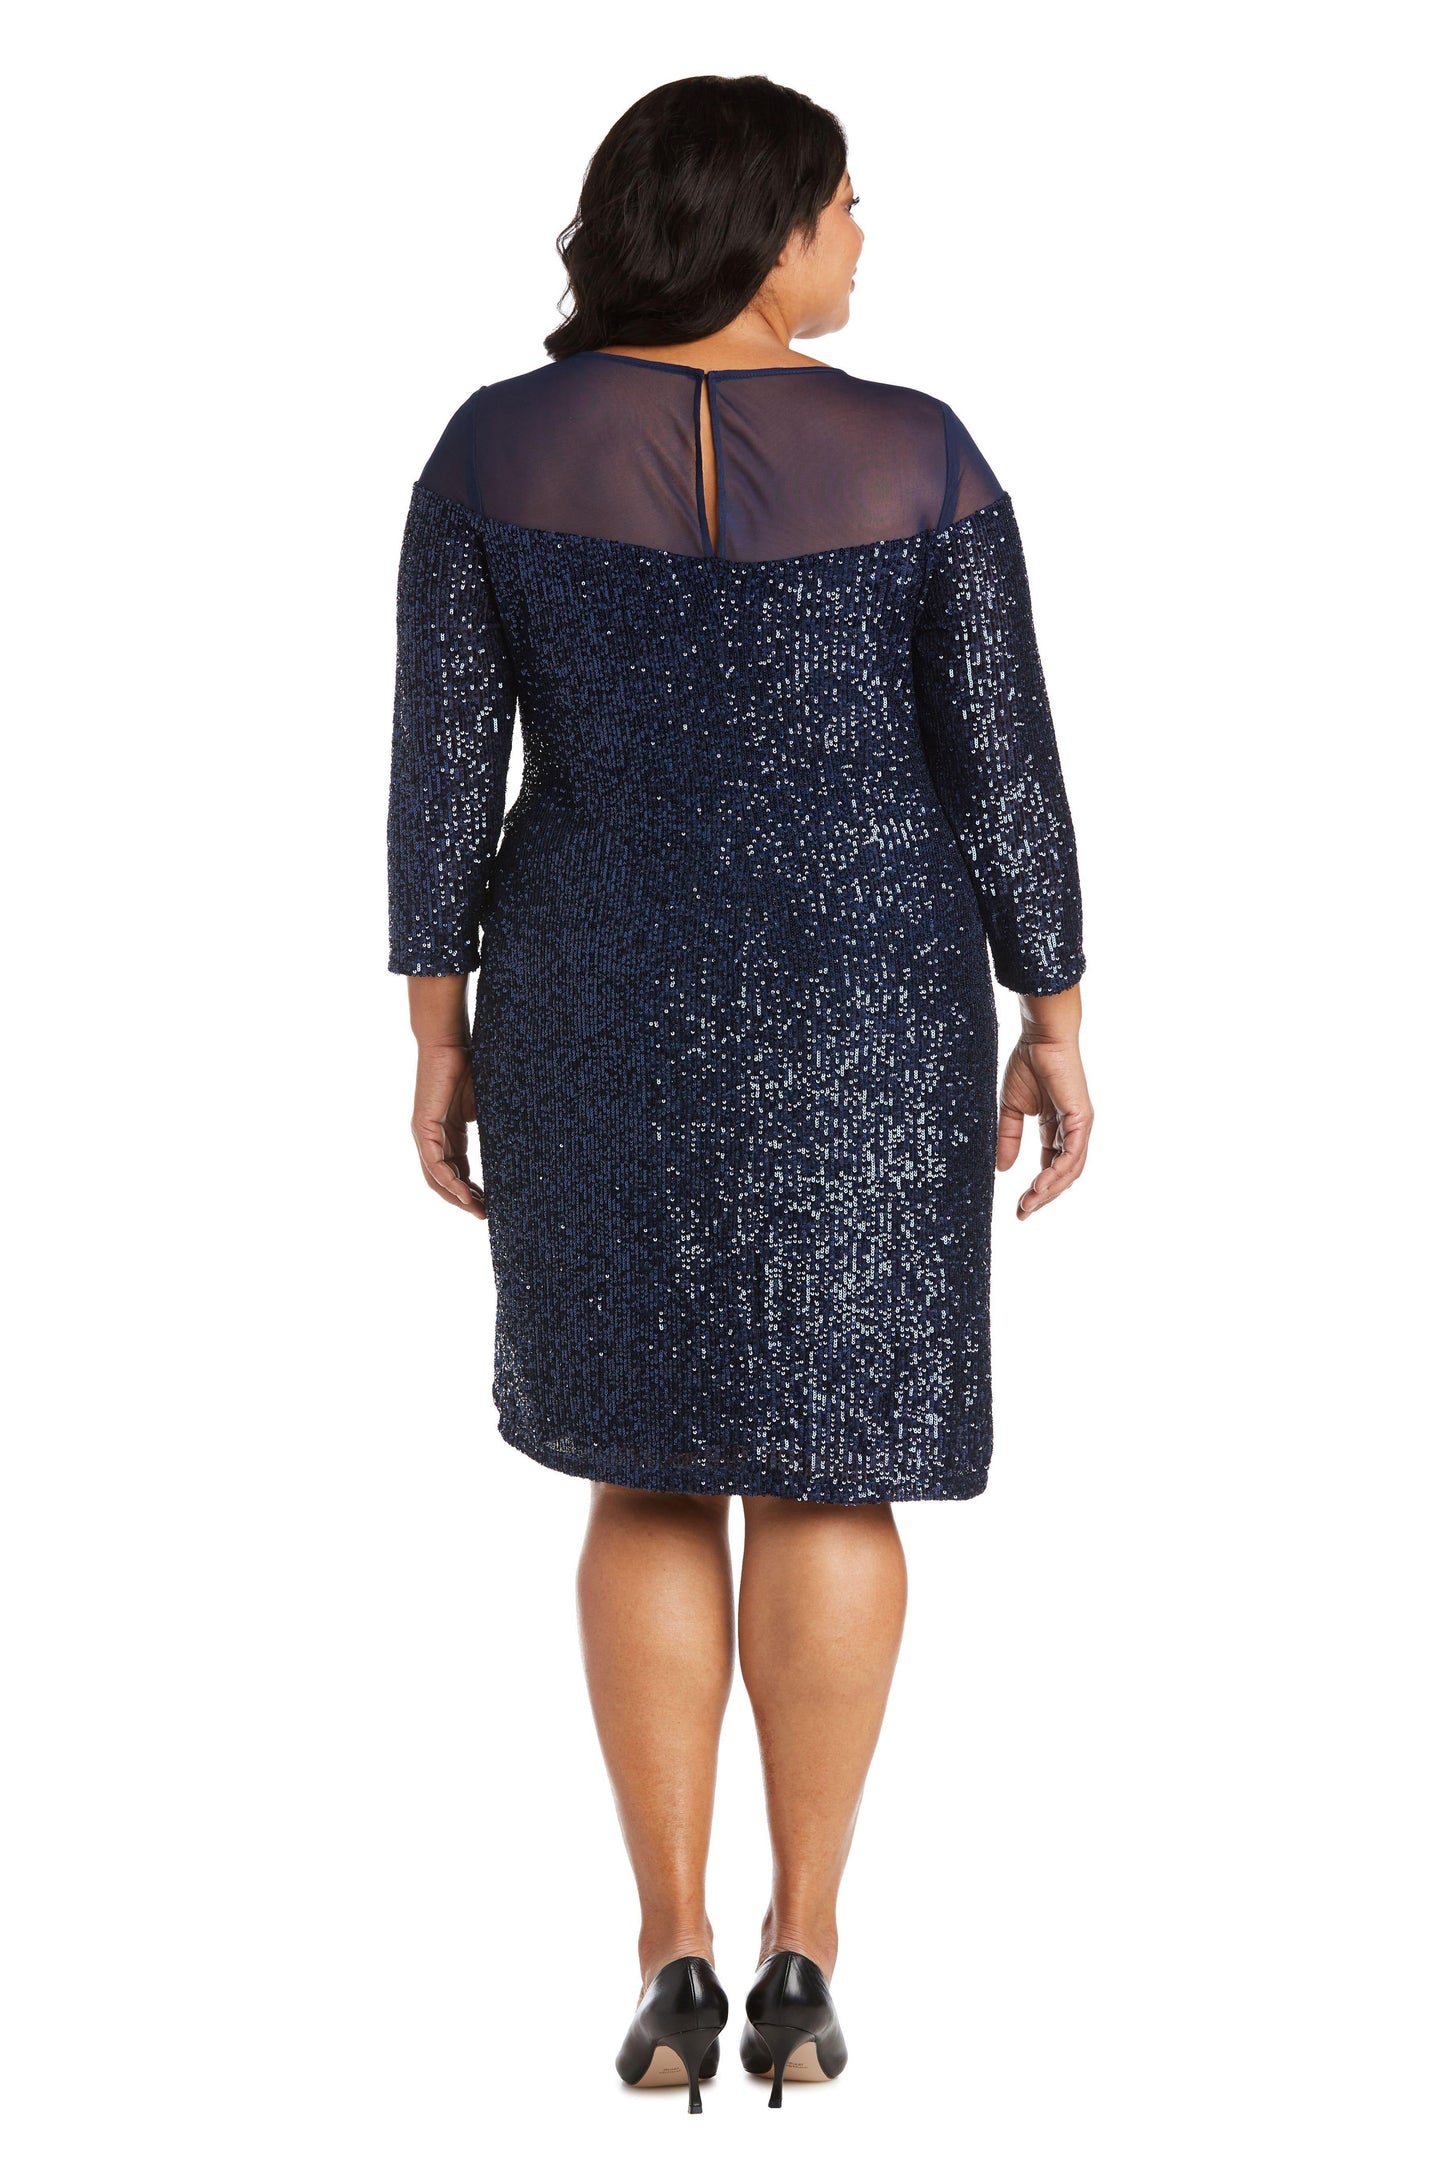 R&M Richards Short Plus Size Dress 2428W - The Dress Outlet